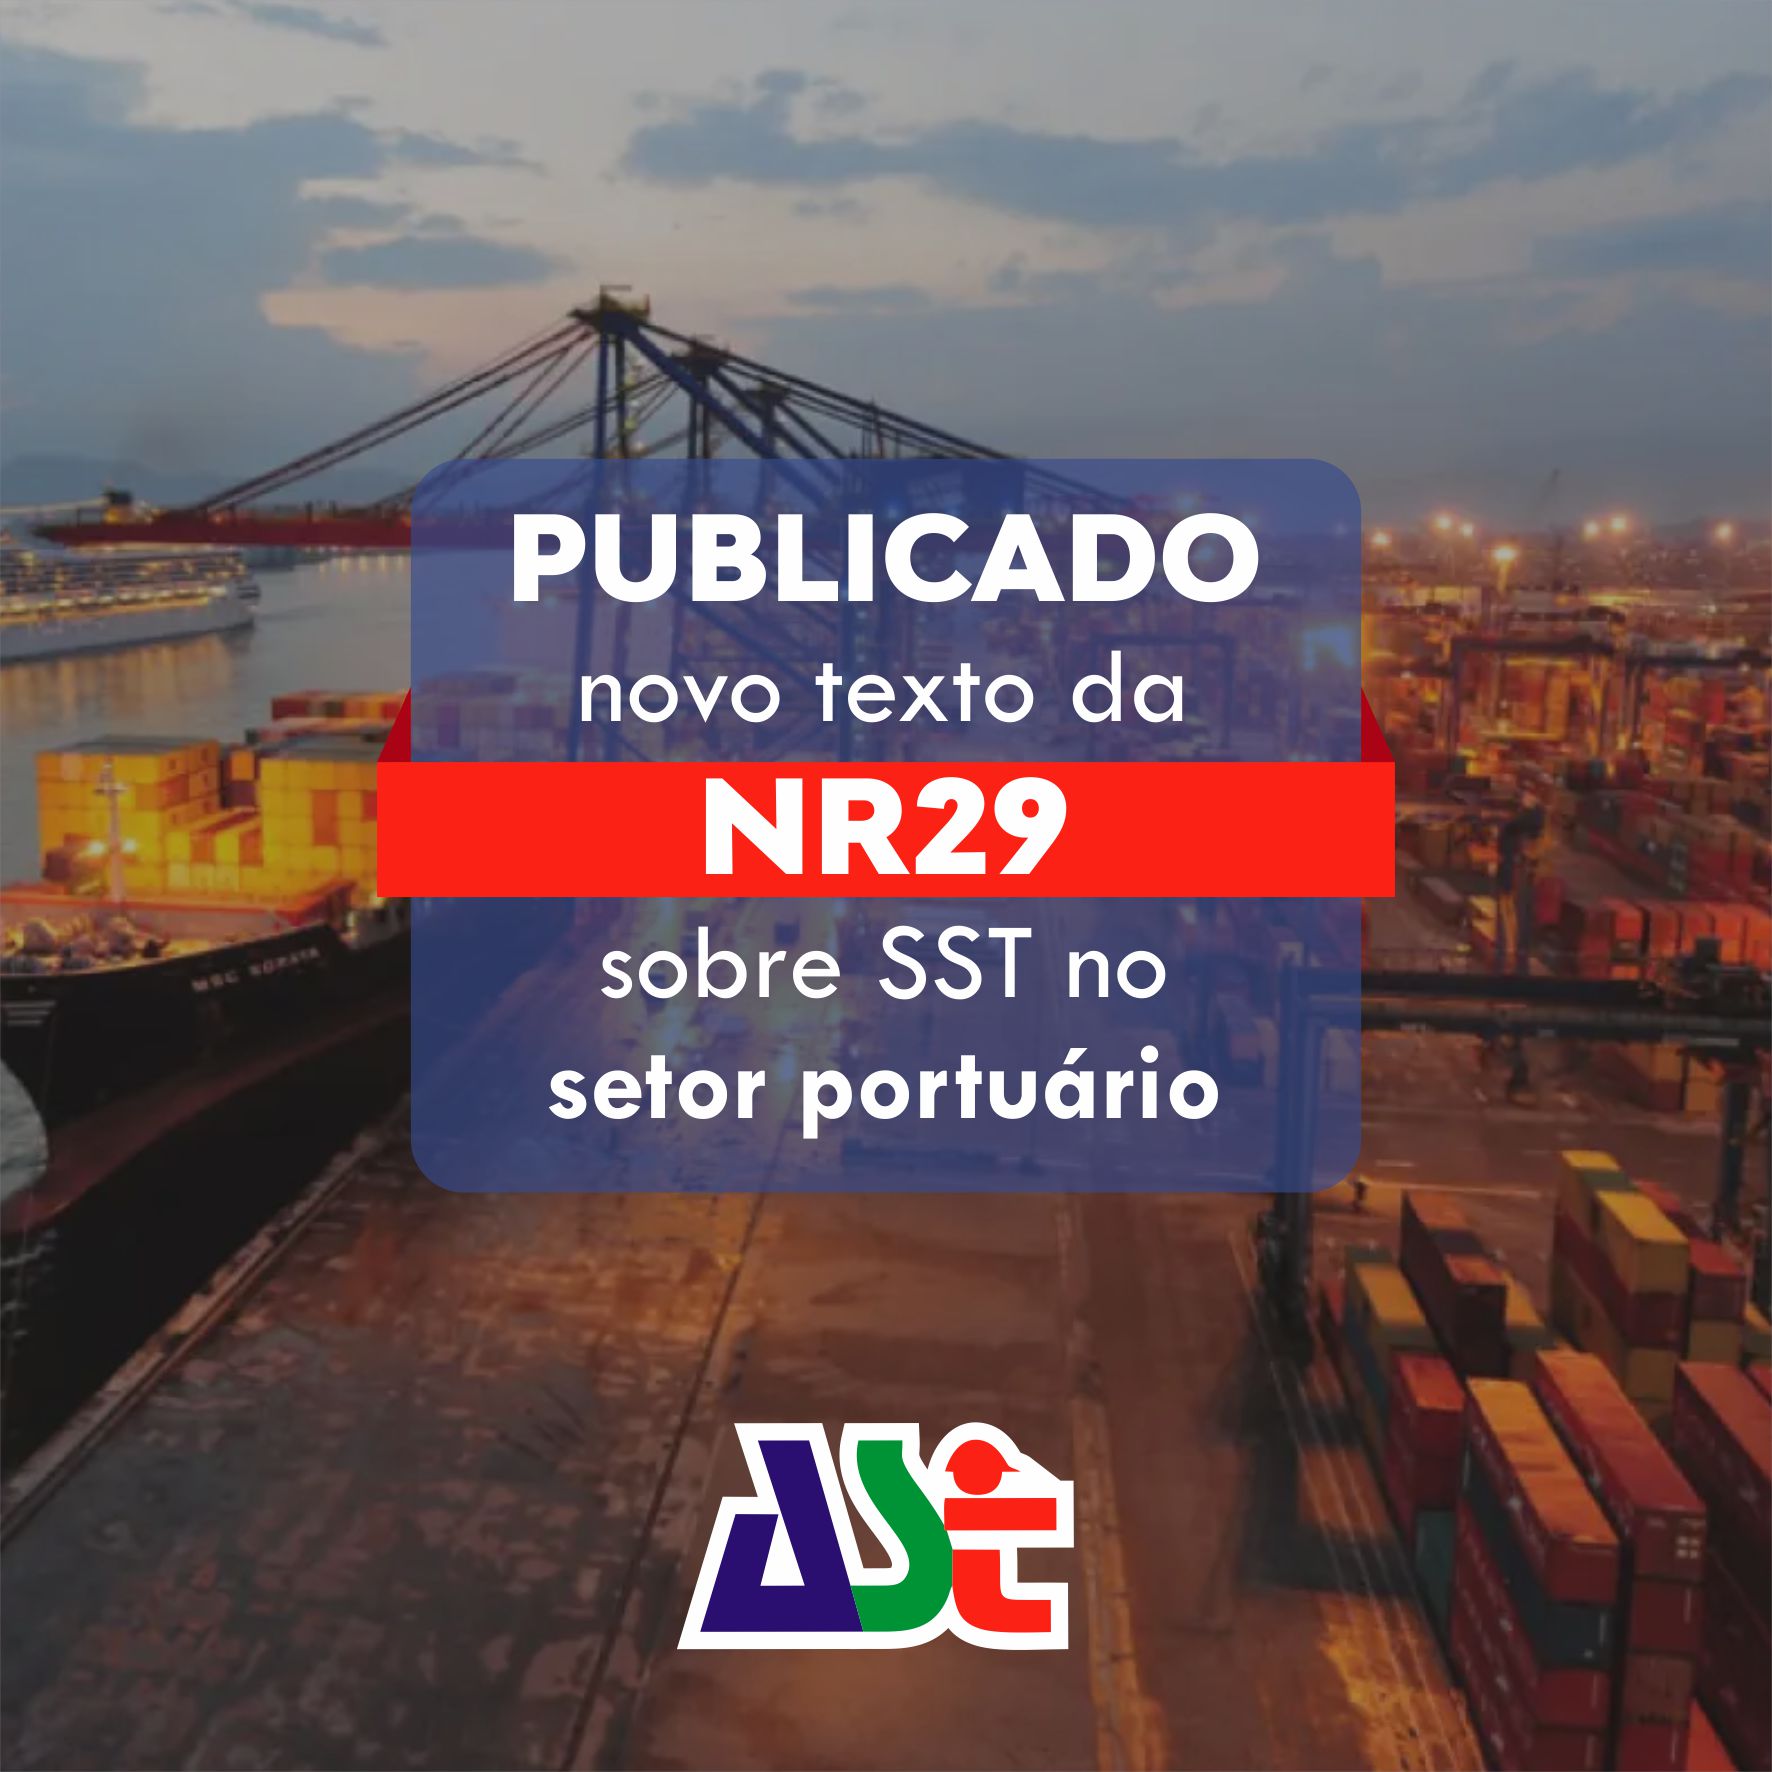 Publicado novo texto da NR29 sobre SST no setor portuário